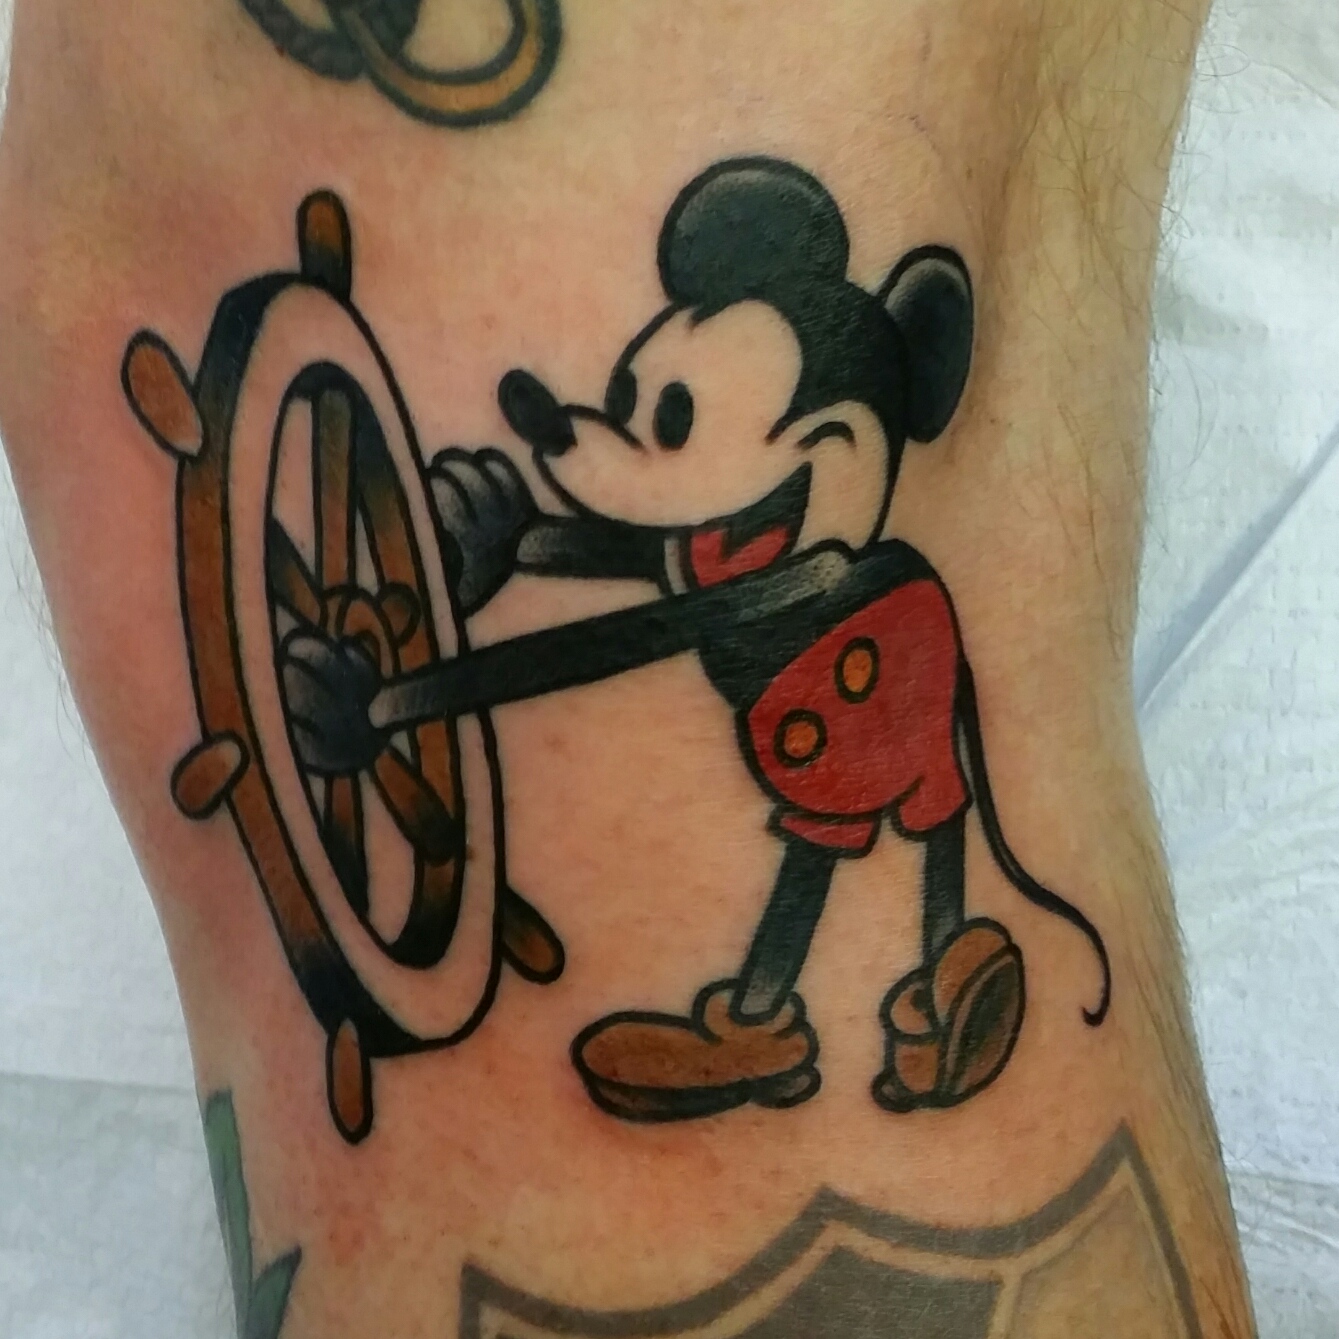 Tattoo uploaded by Xavier • Mickey Mouse tattoo by Arthur Zitka. #classic  #disney #retro #mickeymouse #cartoon #vintage #ArthurZitka • Tattoodo